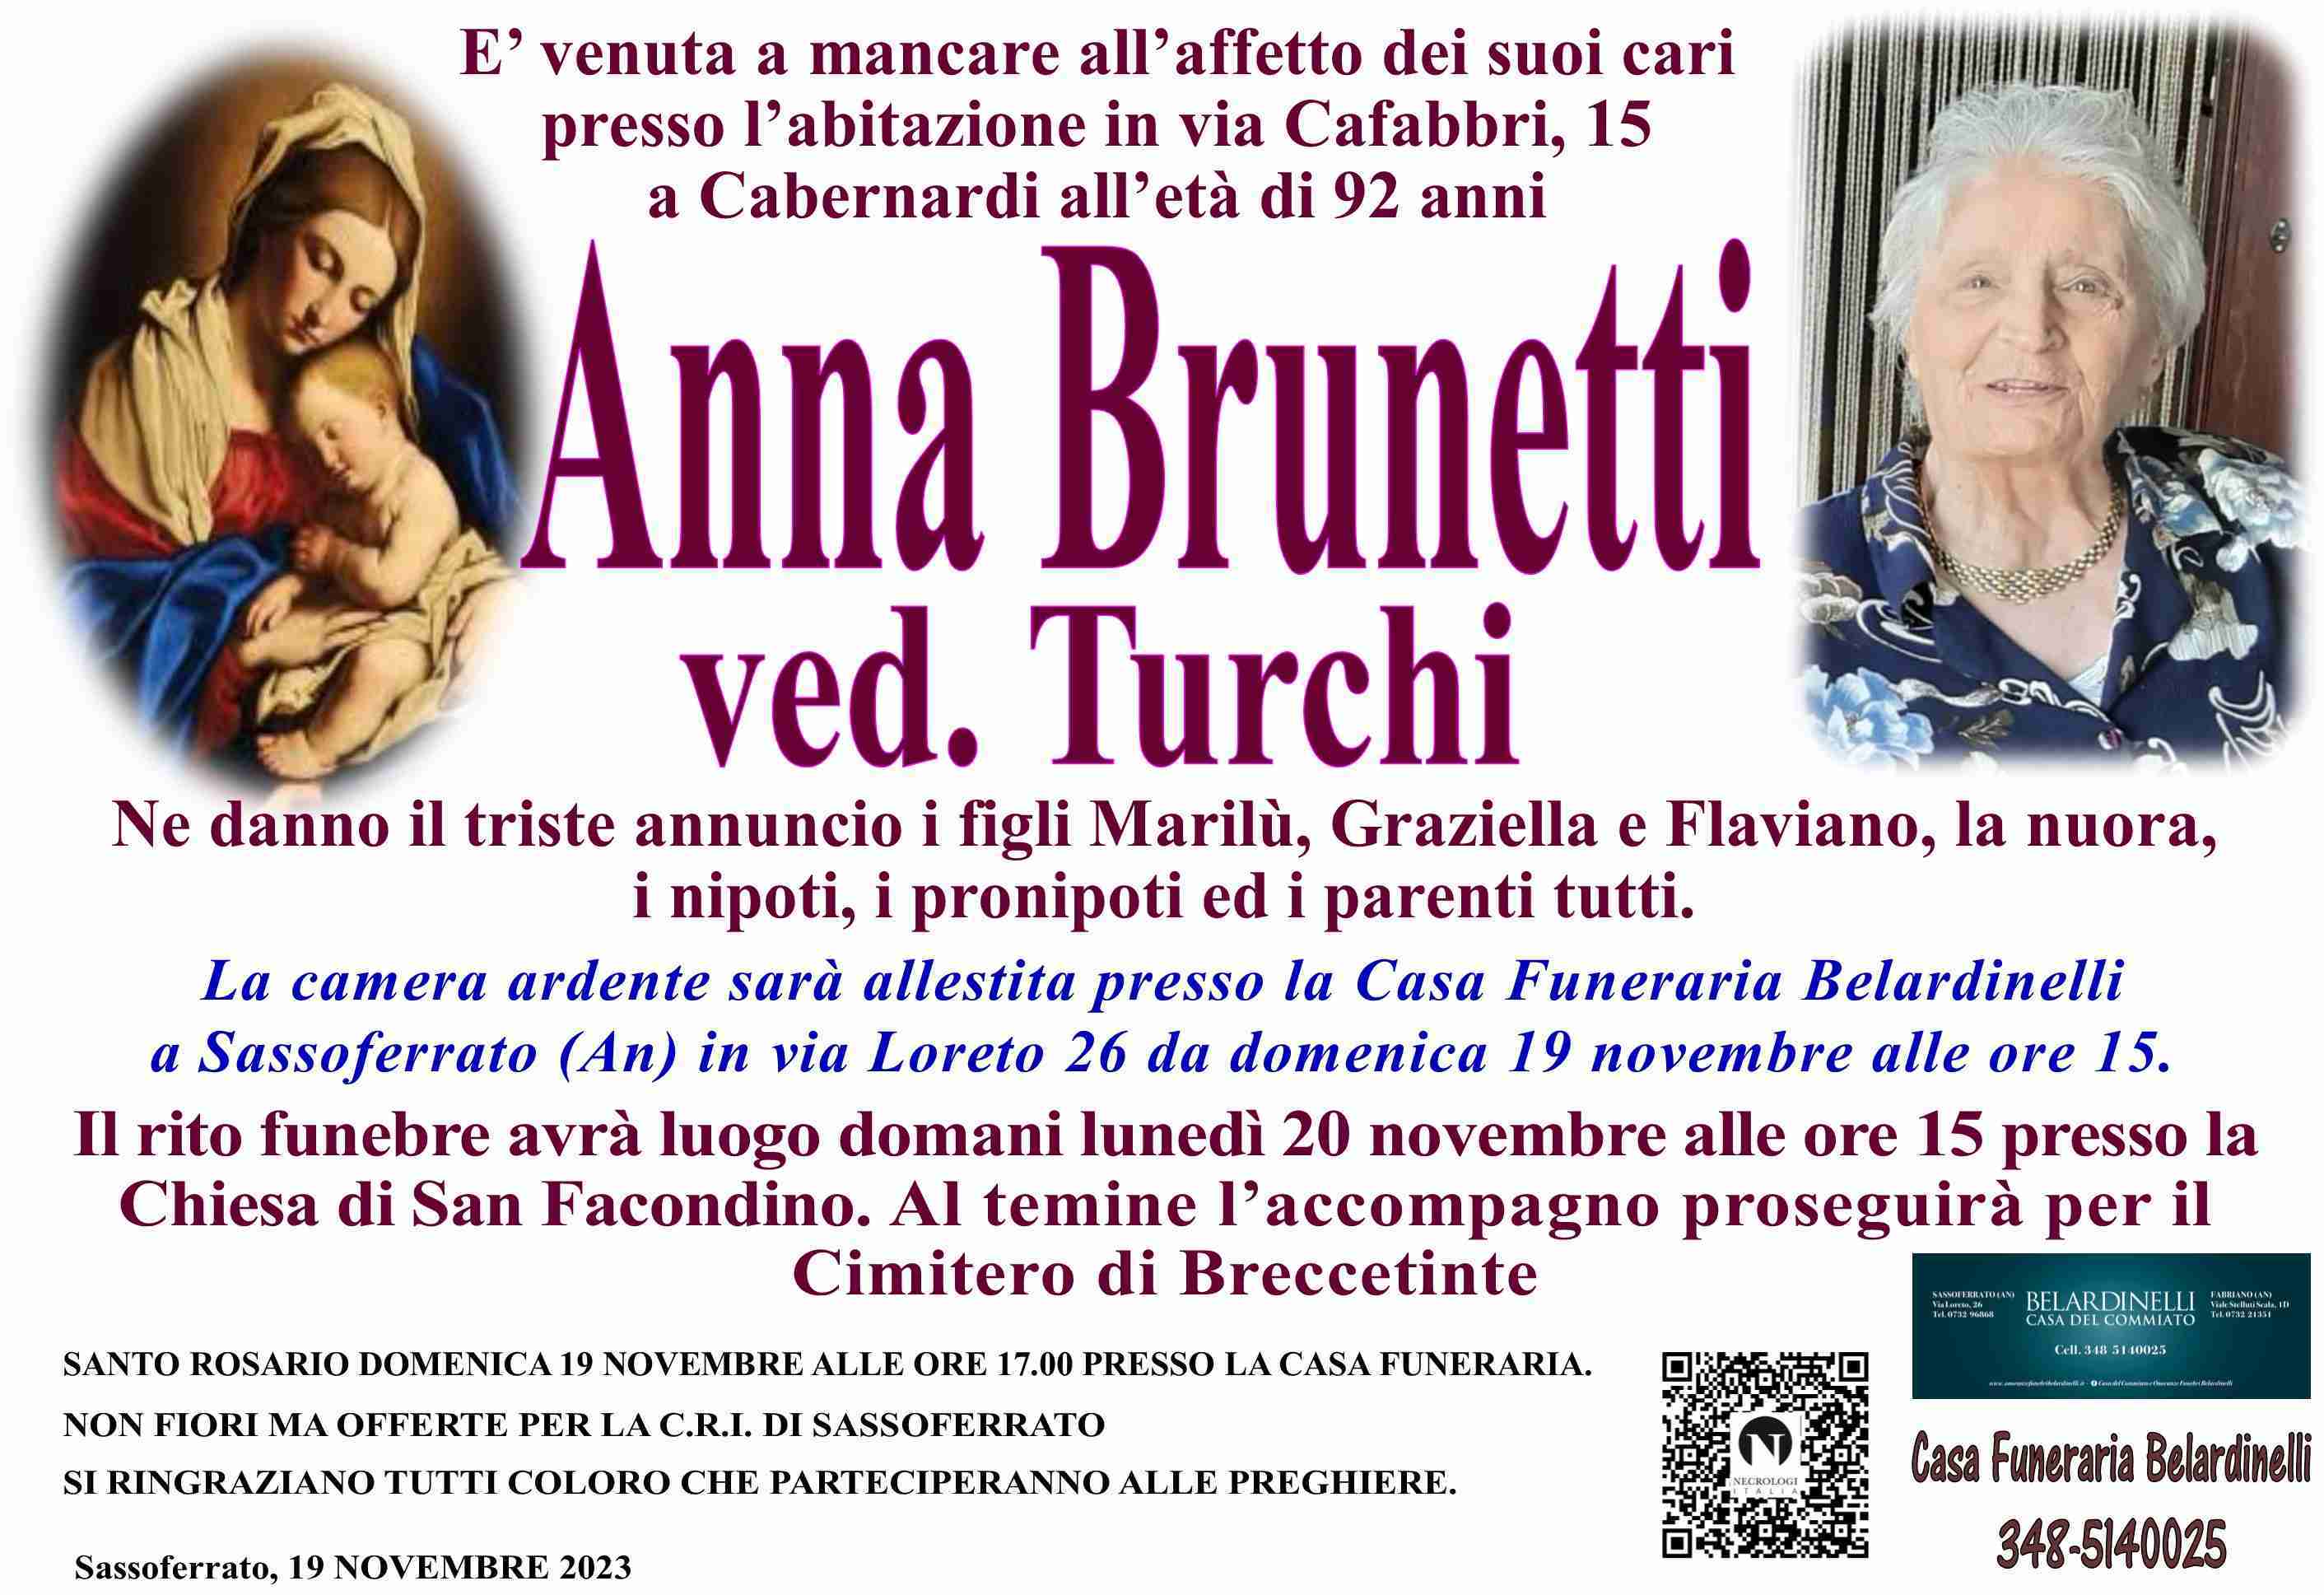 Anna Brunetti